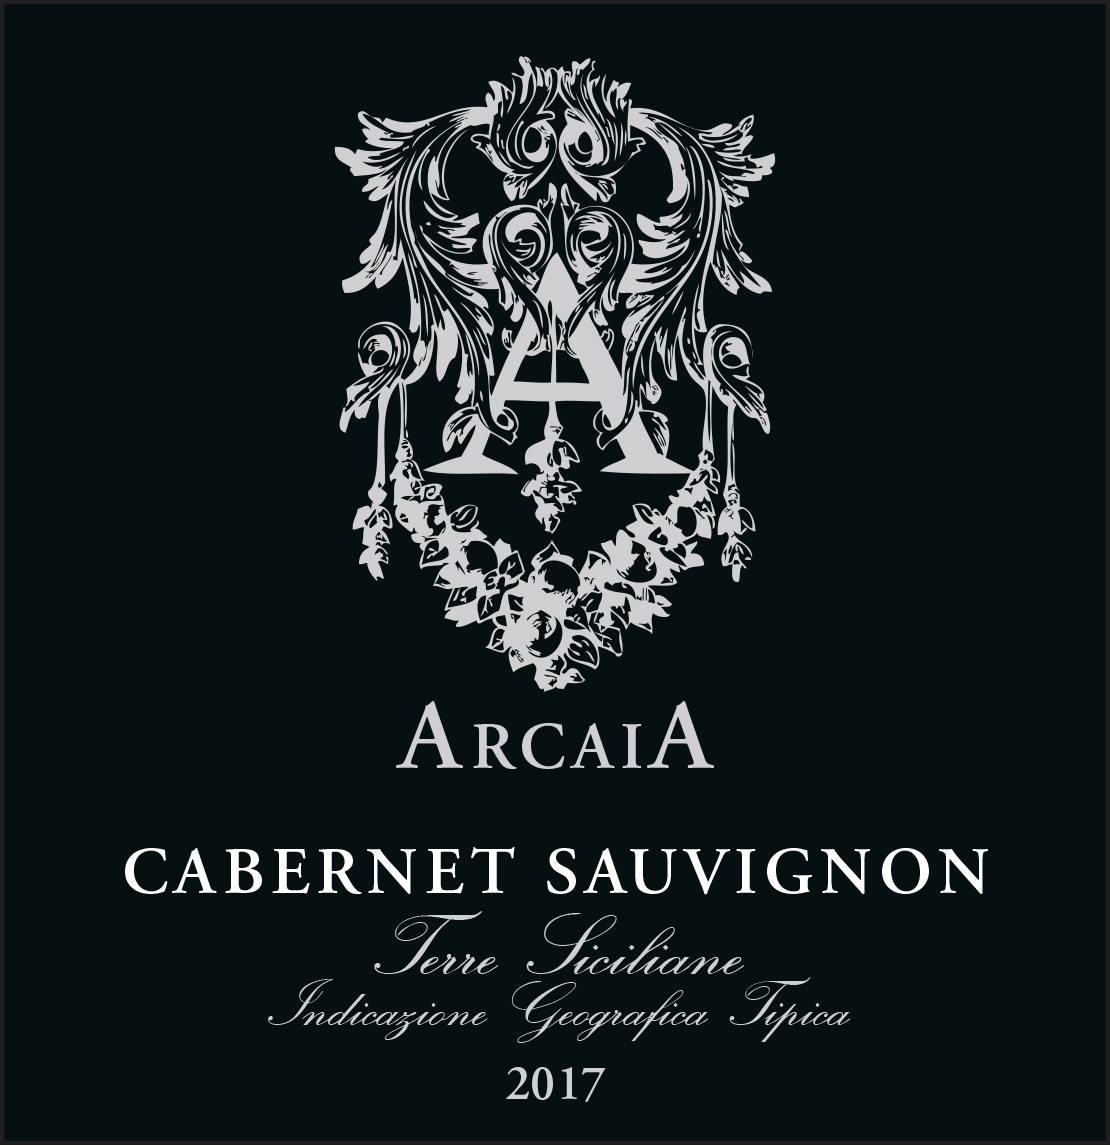 Arcaia - Cabernet Sauvignon label